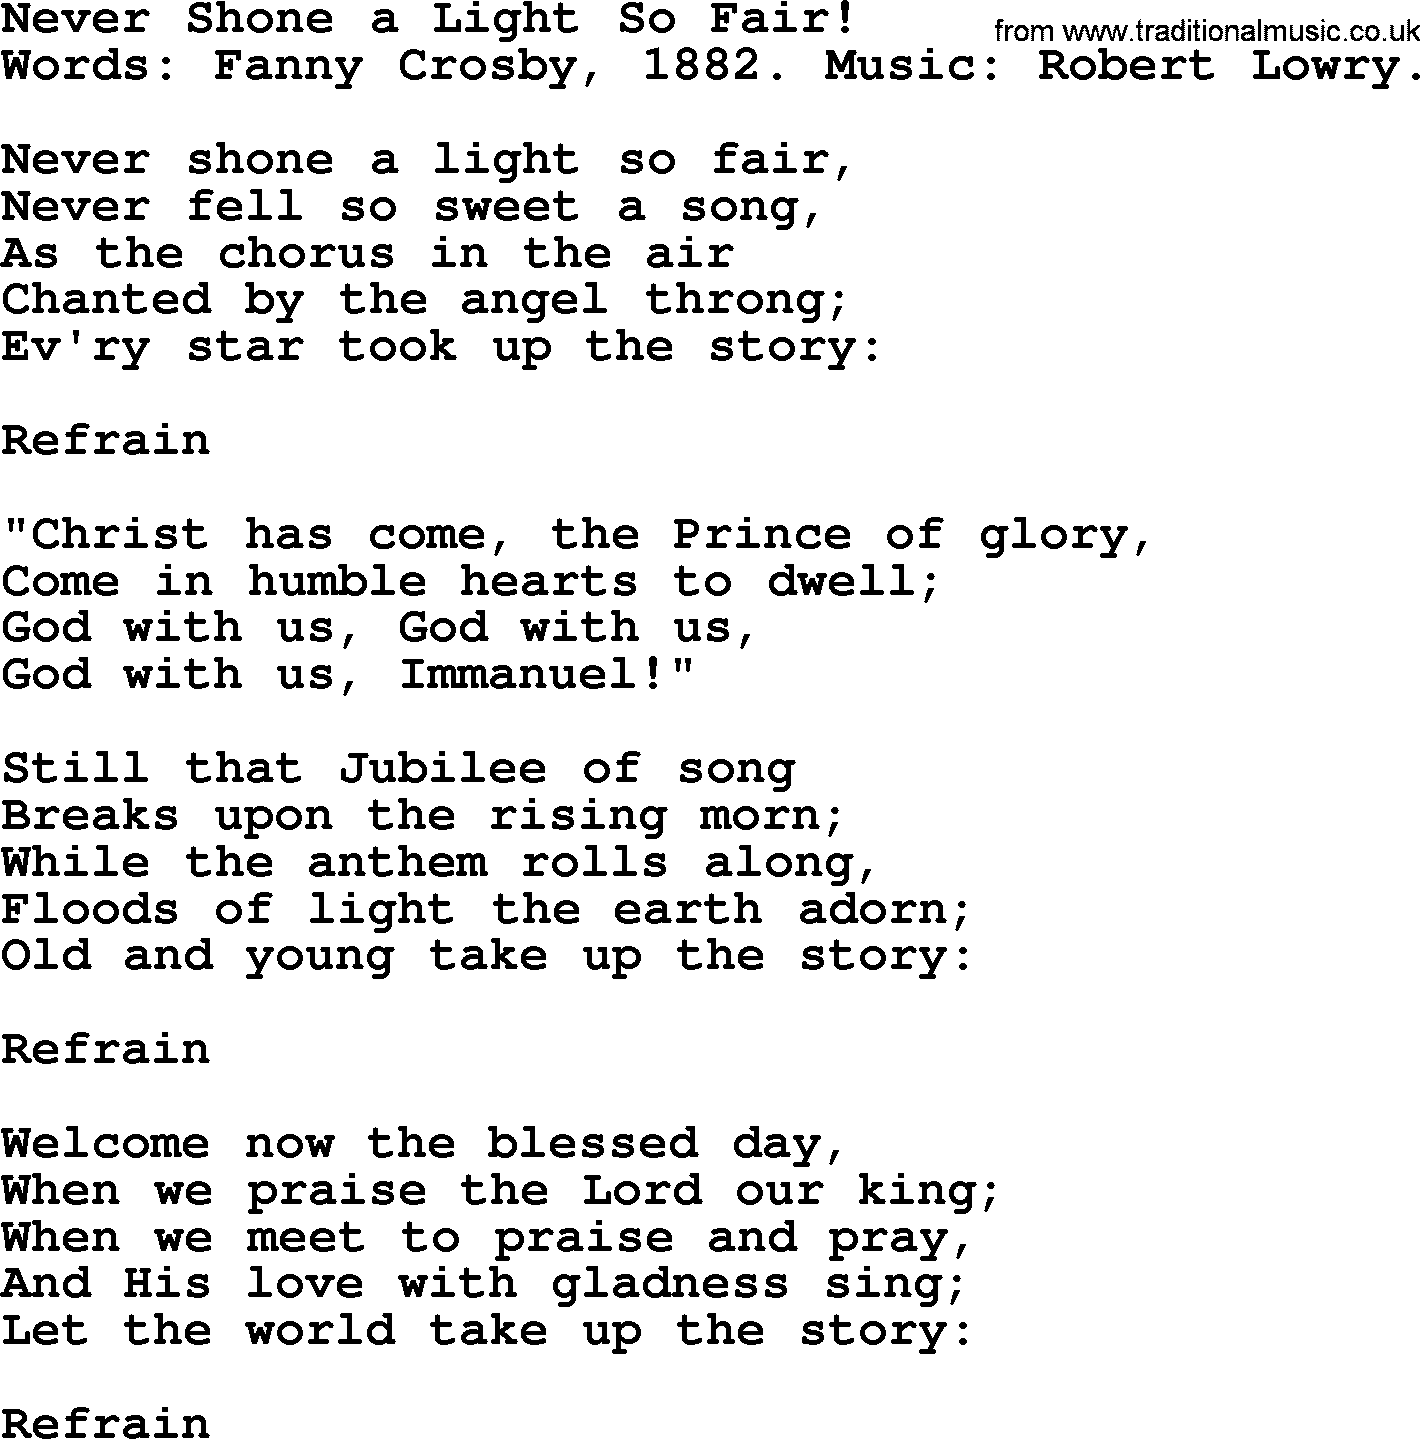 Fanny Crosby song: Never Shone A Light So Fair!, lyrics